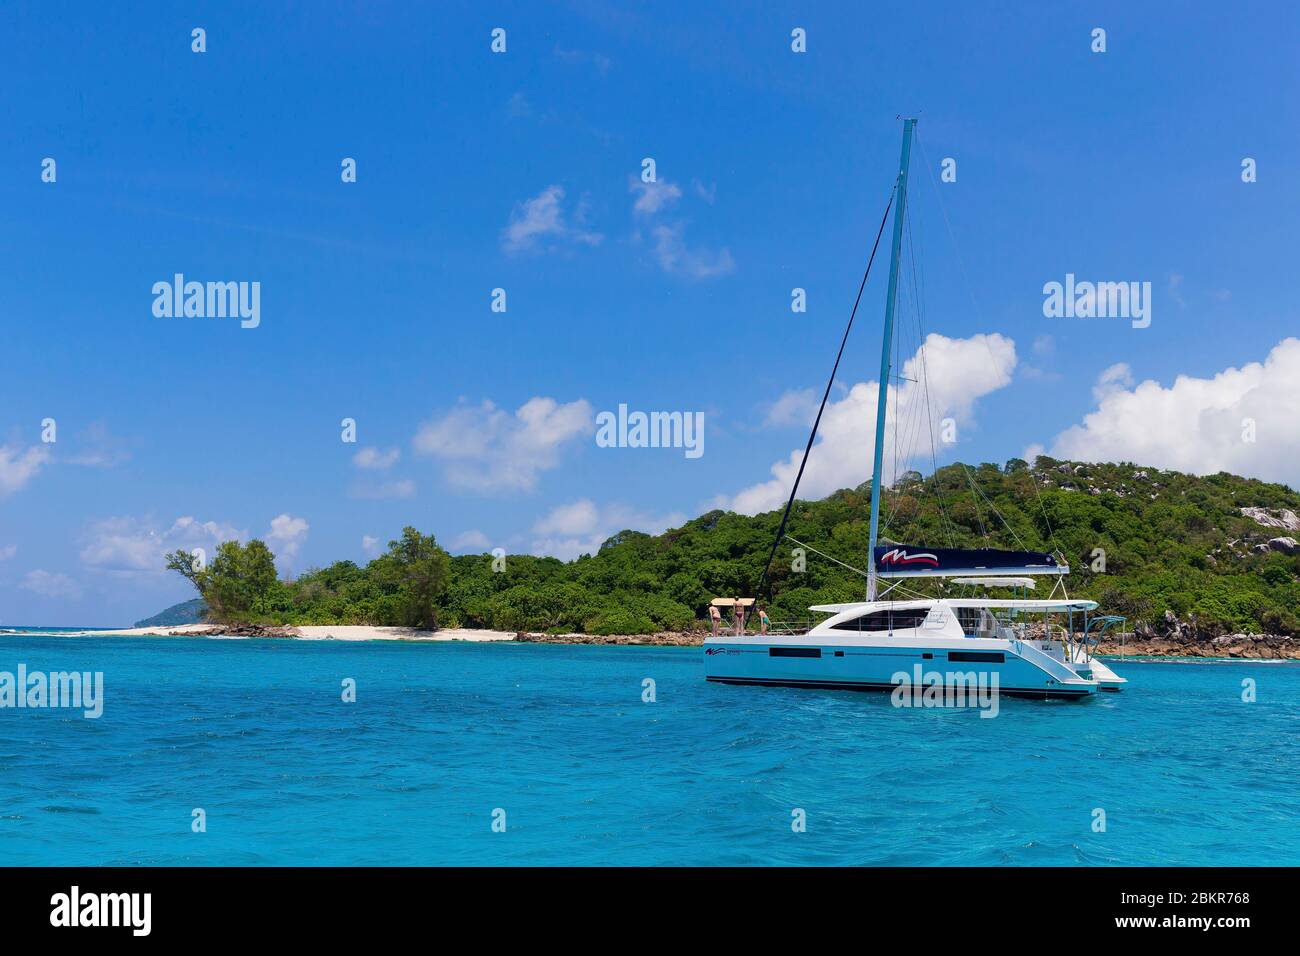 Seychelles, île Cousin, bateau à l'ancre sur l'eau turquoise Banque D'Images